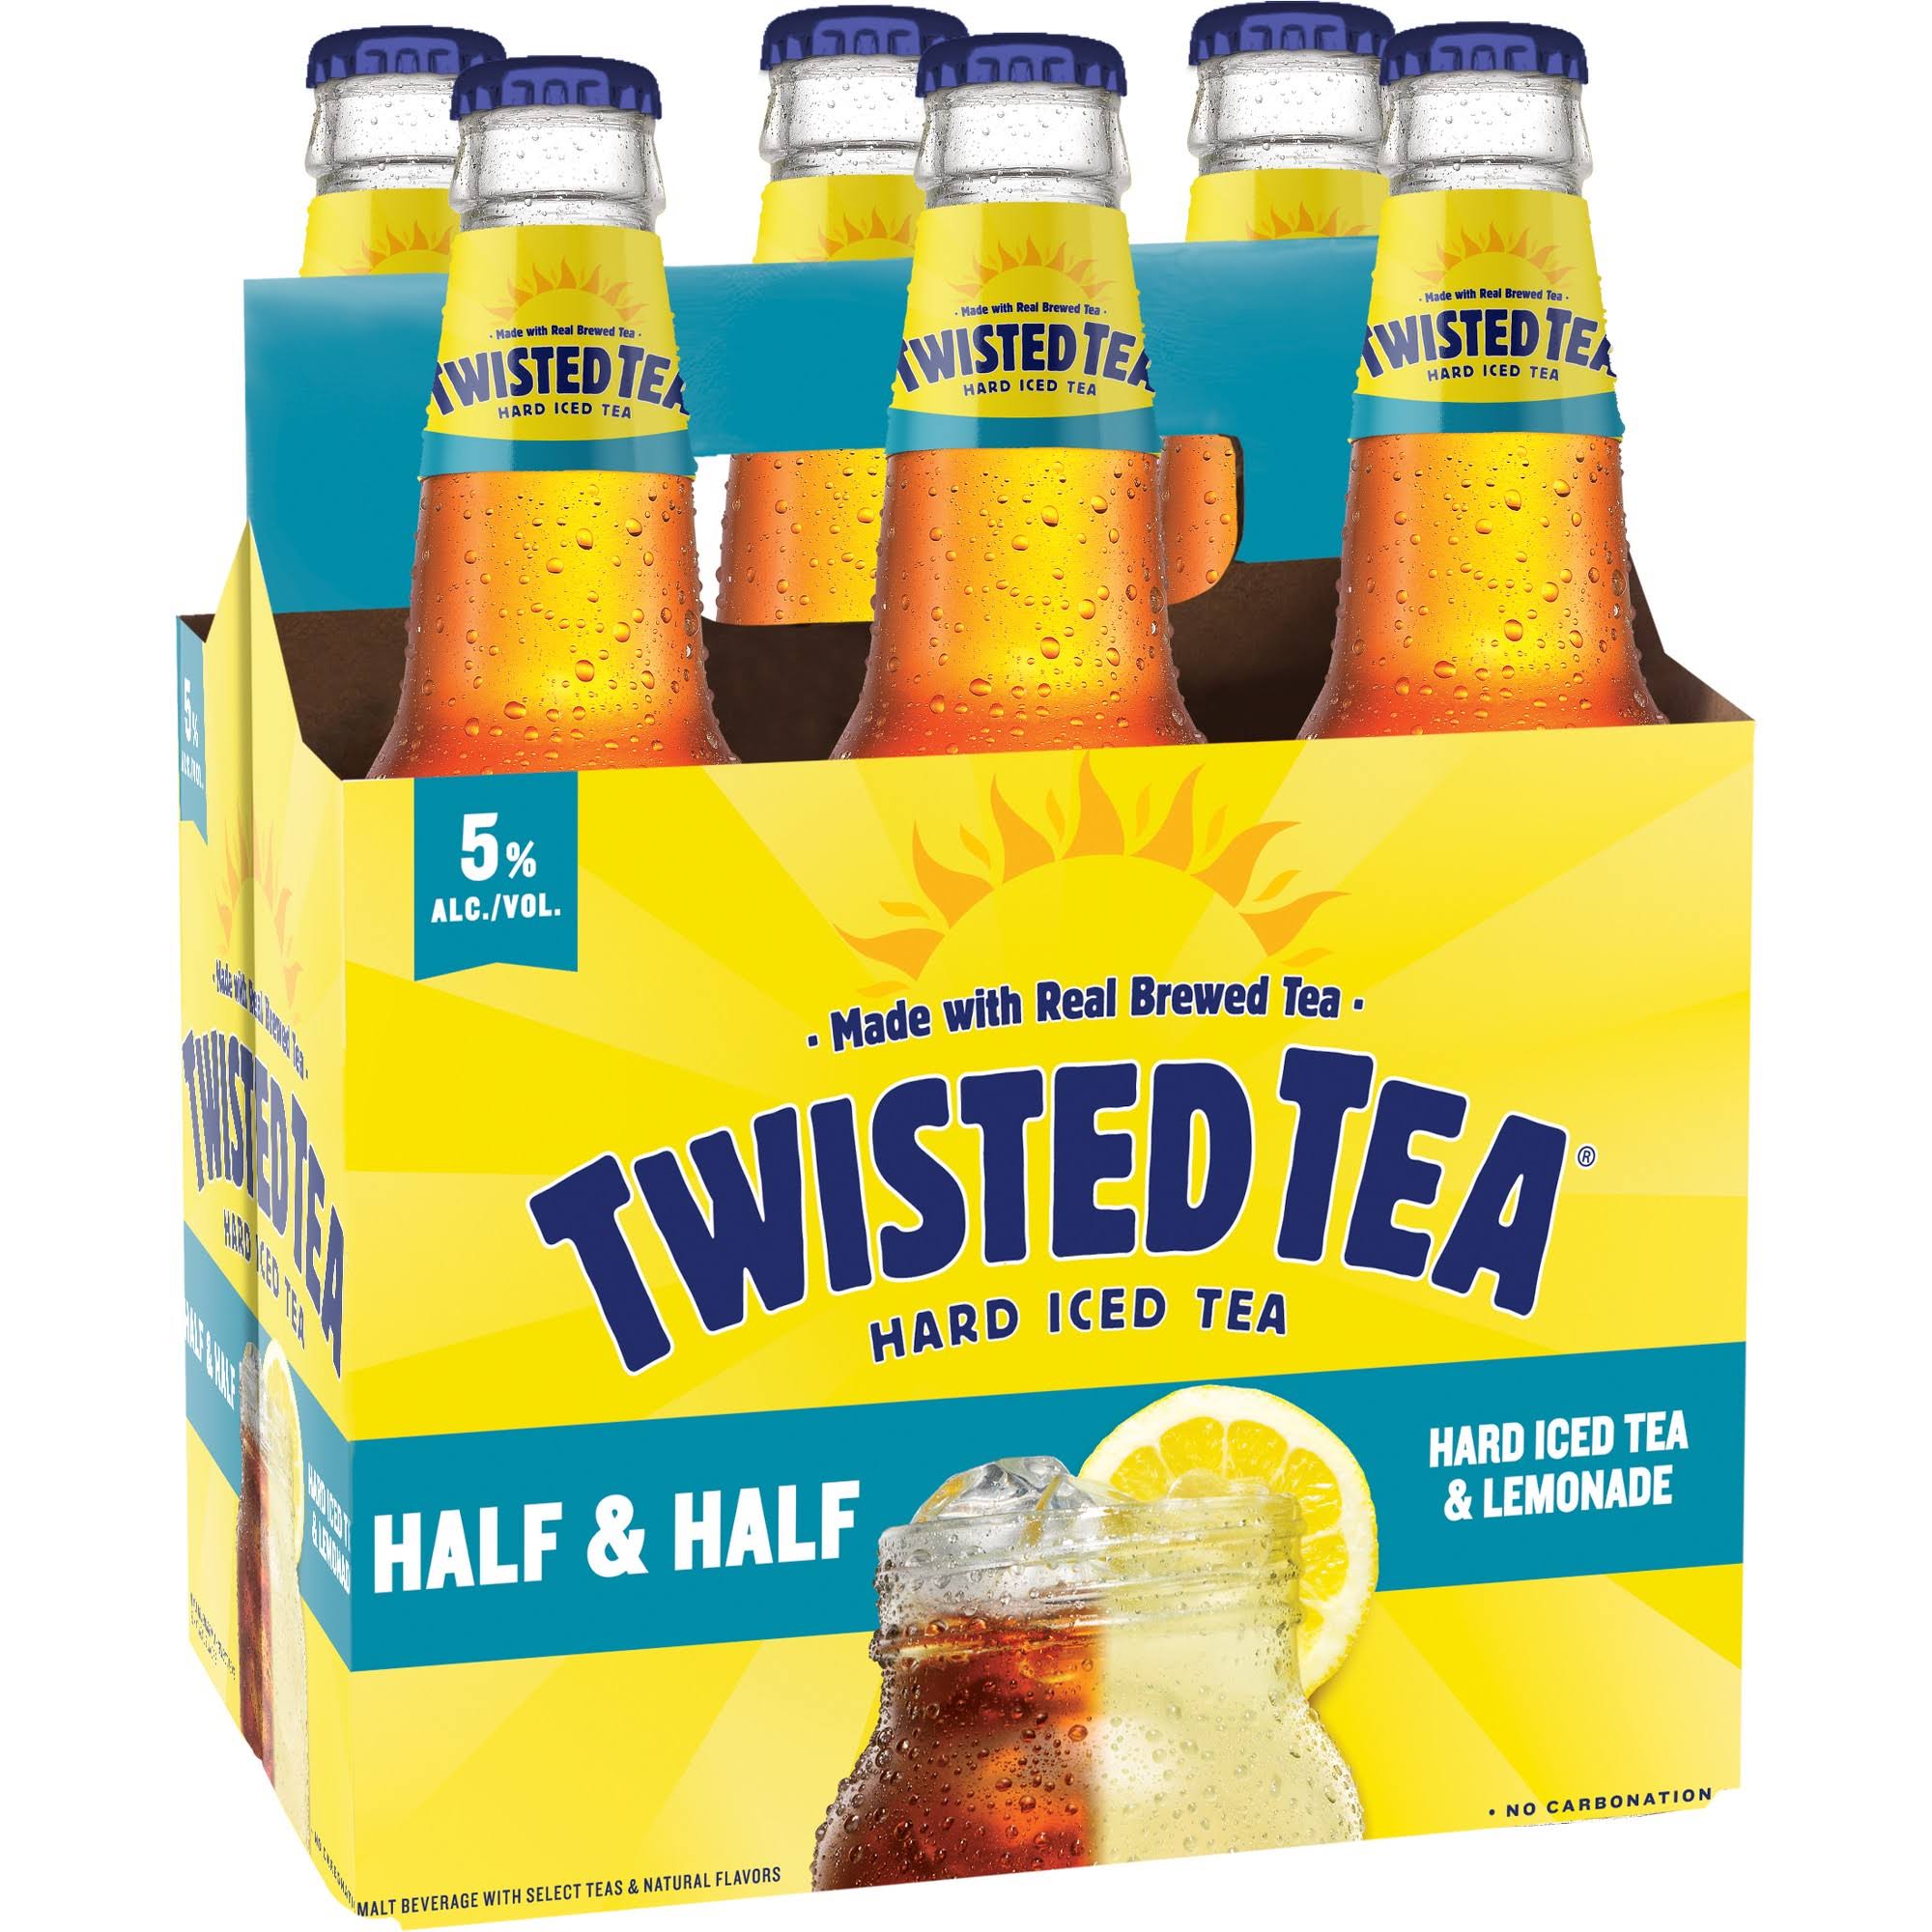 Twisted Tea Hard Iced Tea, Half & Half, Lemonade - 6 - twelve fl oz bottles